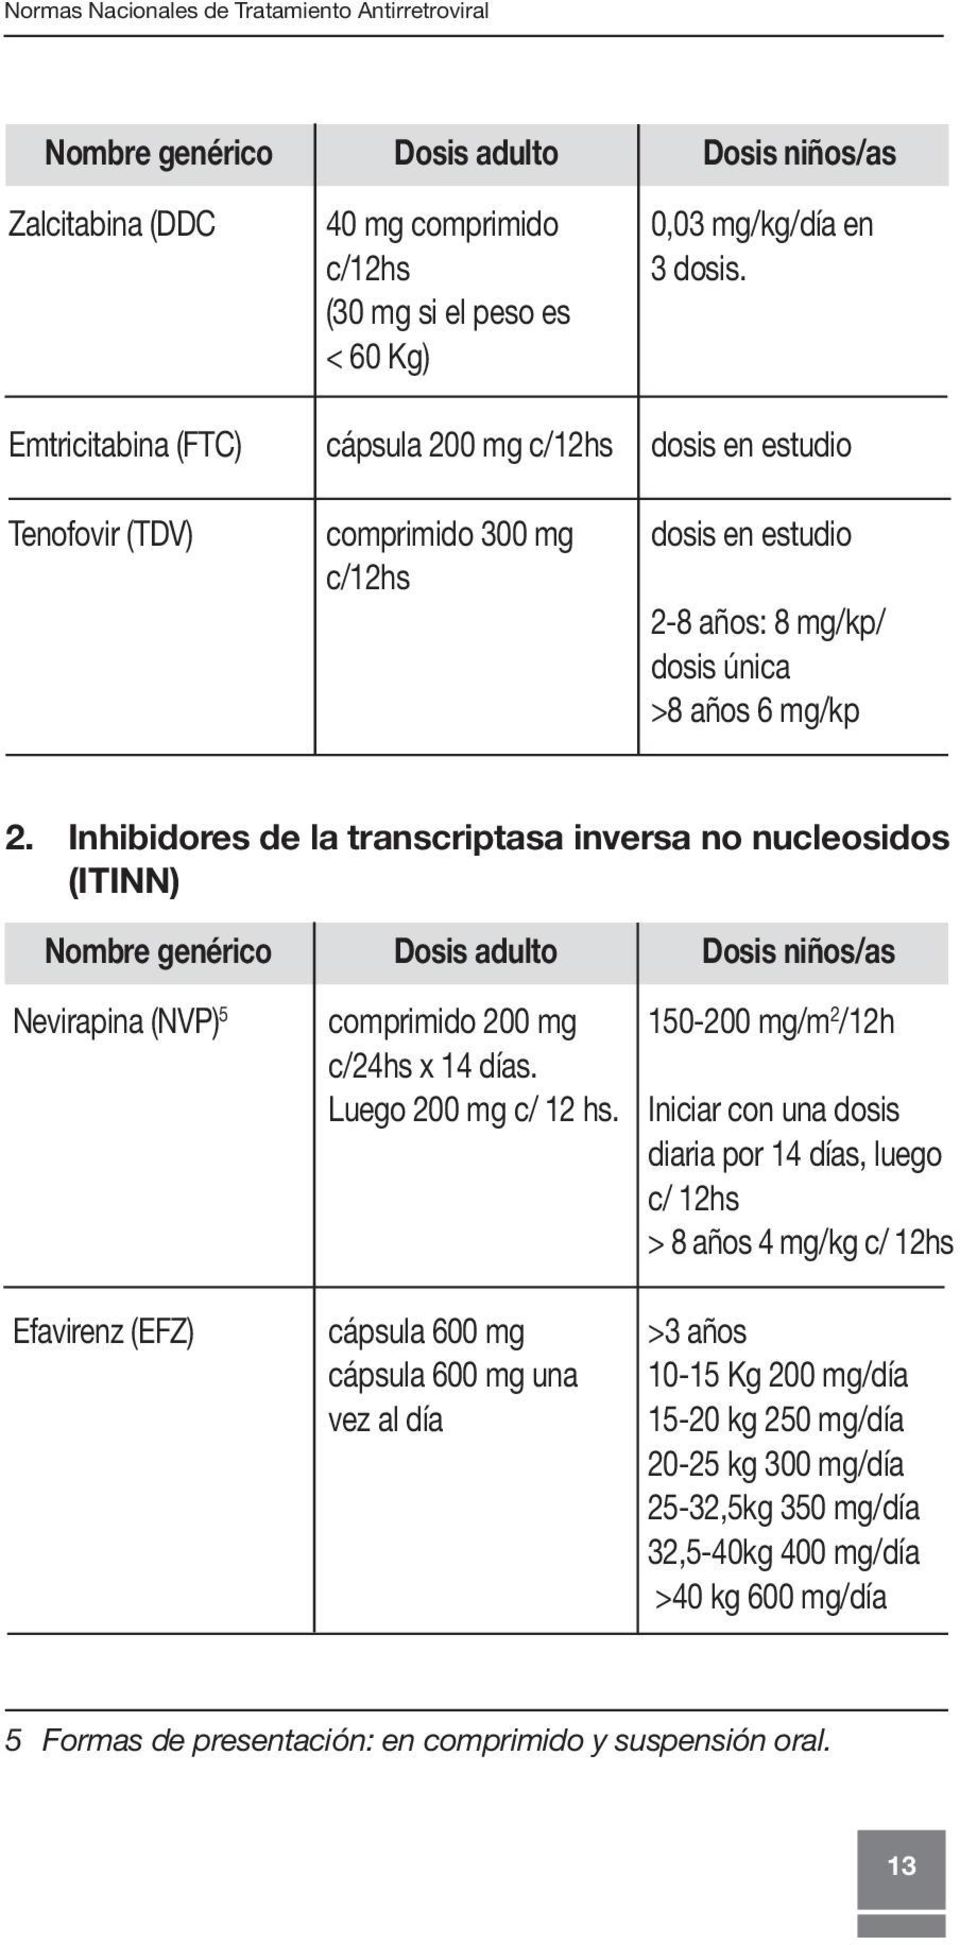 Inhibidores de la transcriptasa inversa no nucleosidos (ITINN) Nombre genérico Dosis adulto Dosis niños/as Nevirapina (NVP) 5 comprimido 200 mg 150-200 mg/m 2 /12h c/24hs x 14 días.